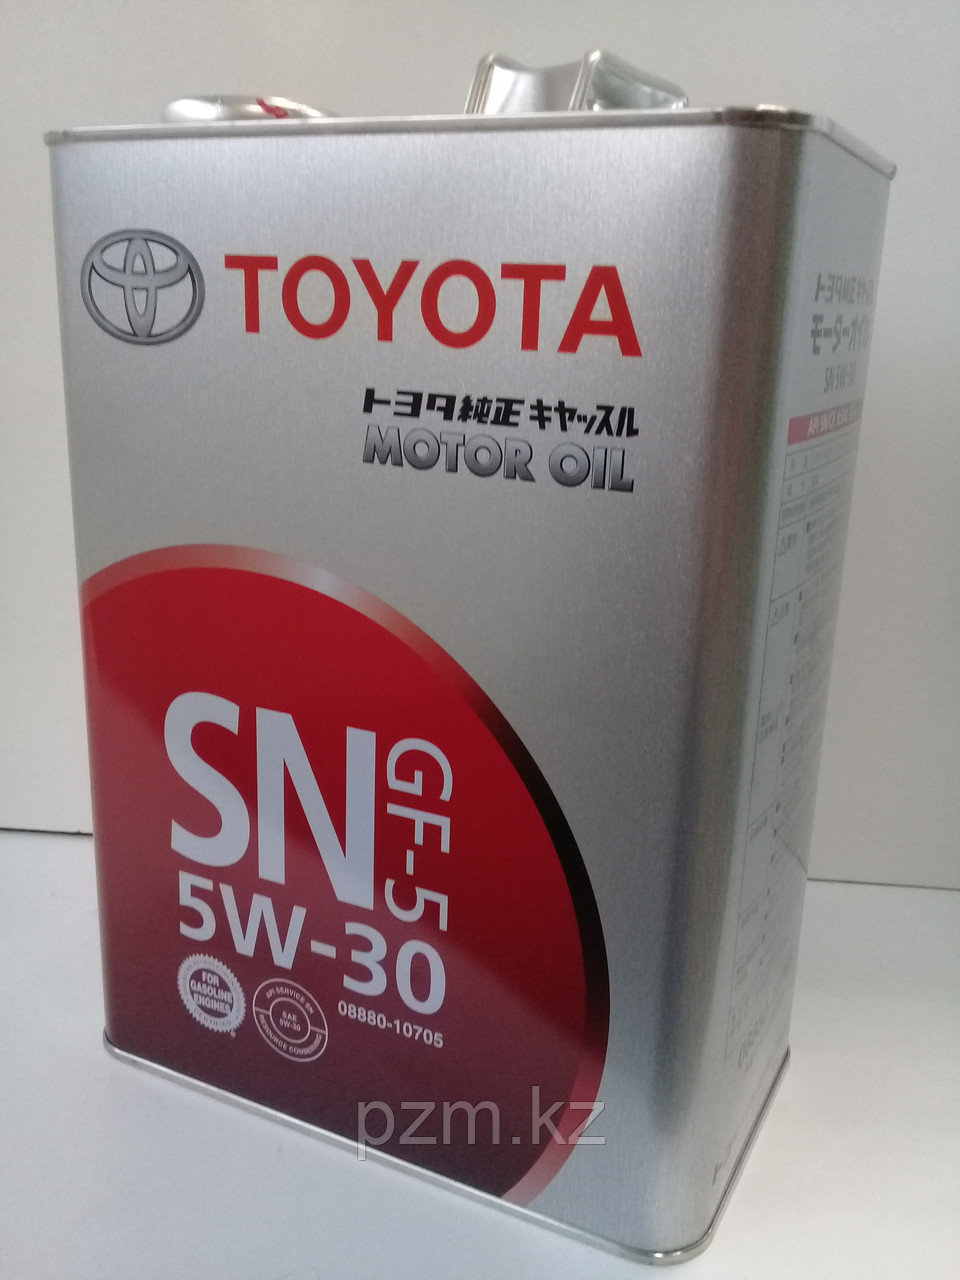 Замена масла в двигателе Toyota  Previa 2.4 (масло + фильтр)  оригинальное моторное масло тойота 5W30